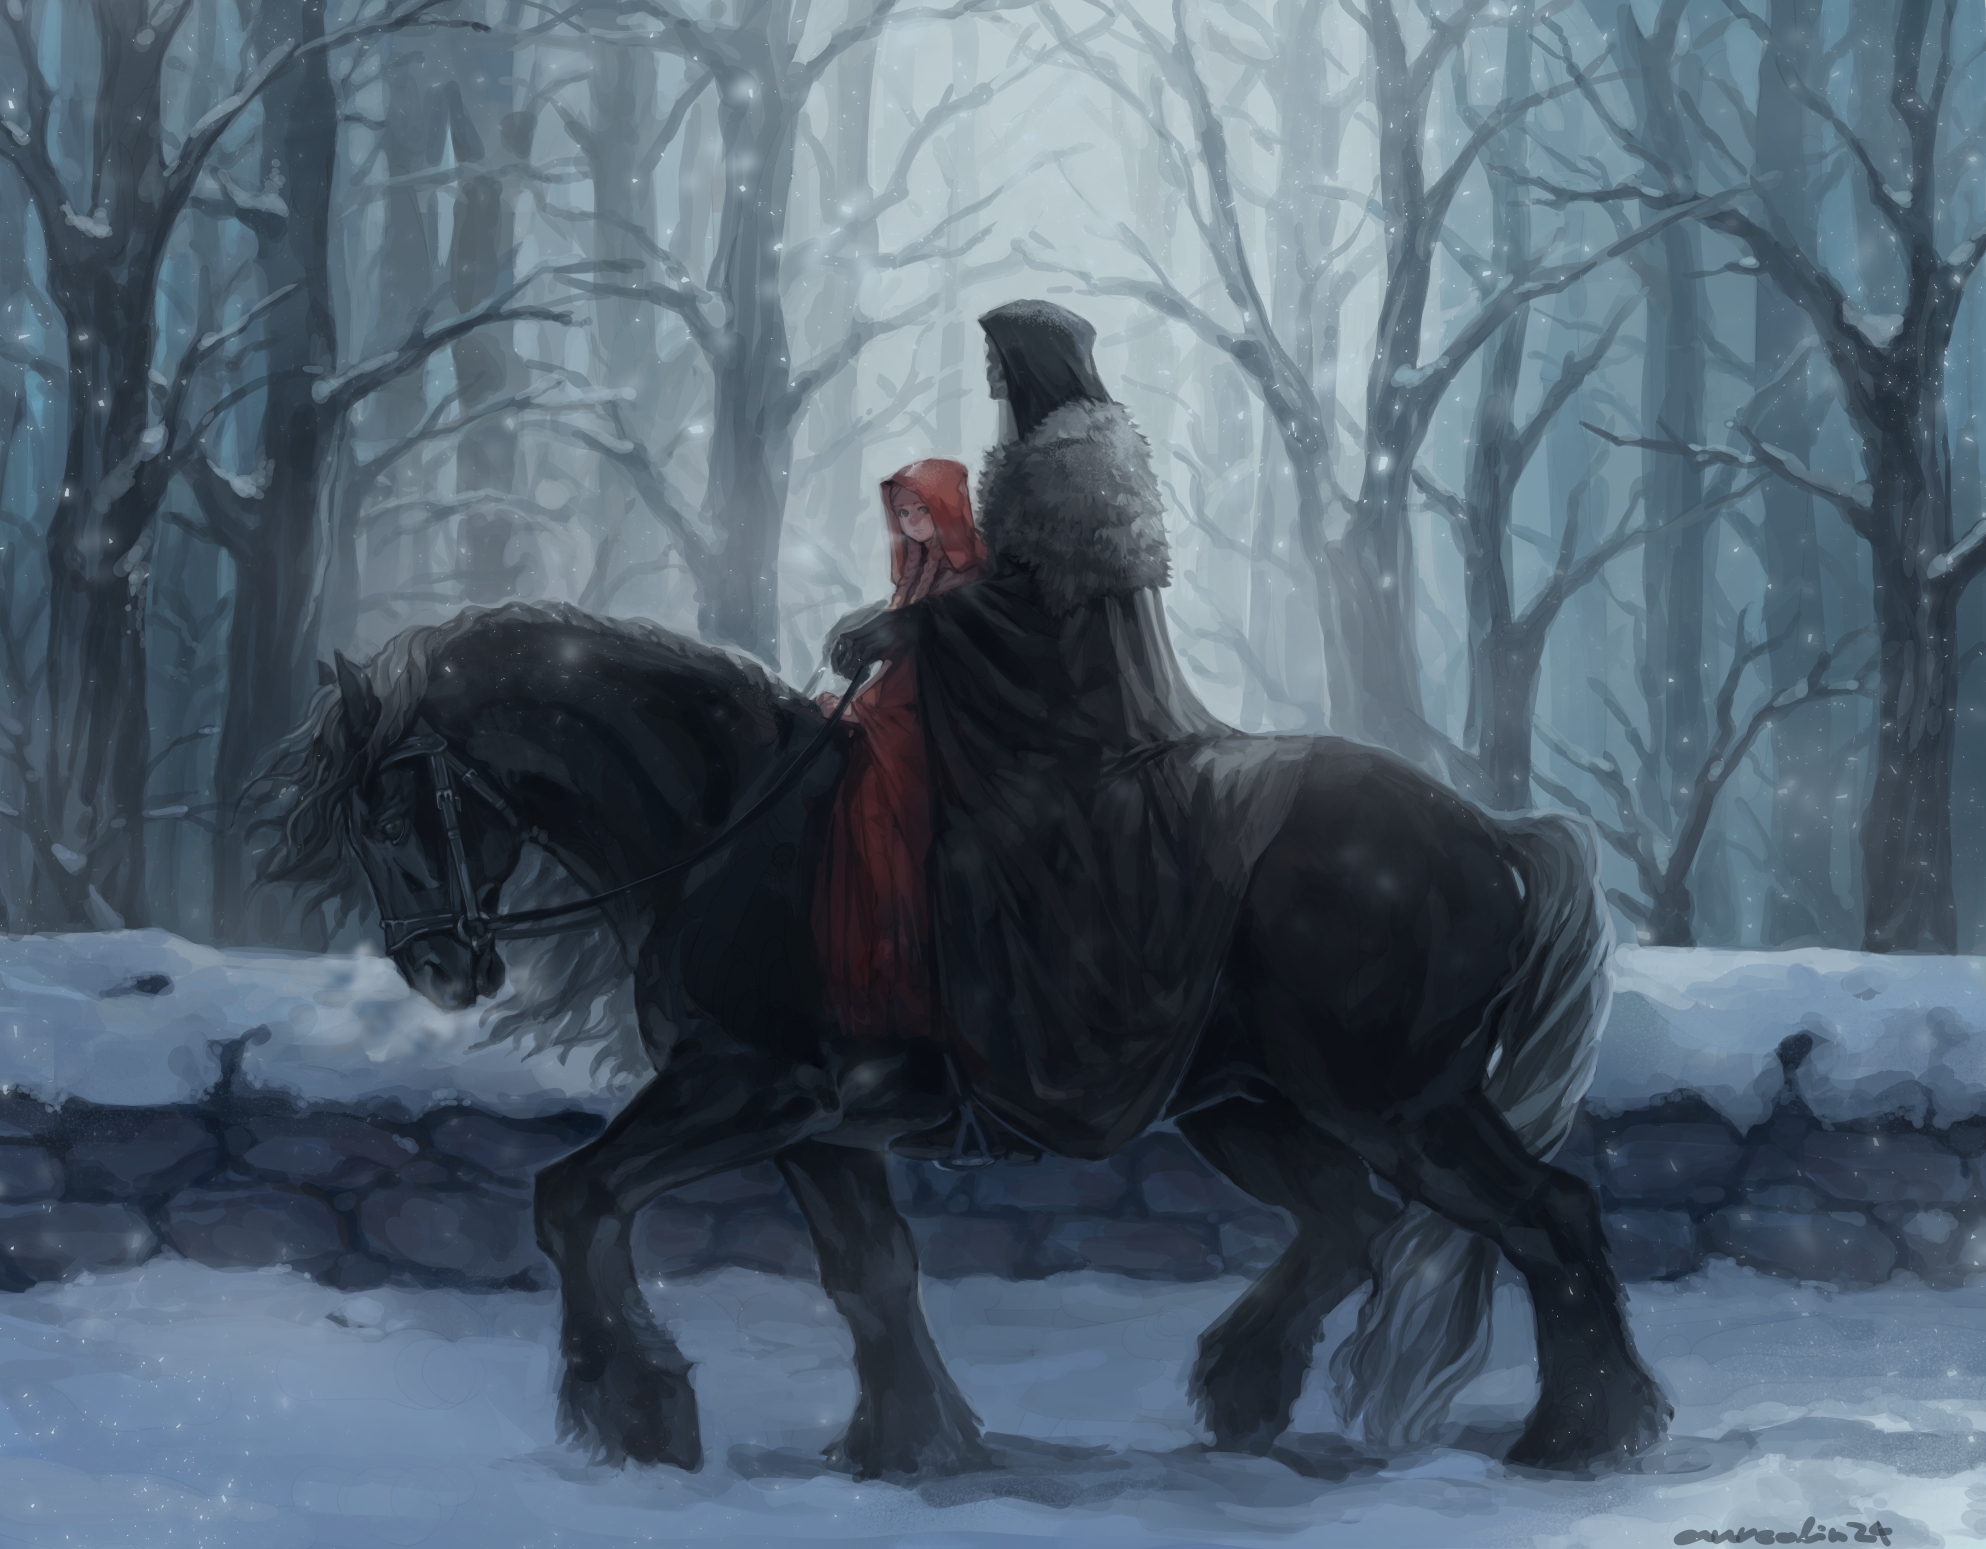 Обои аниме девушка лошадь скелет езда снег зима лес бесплатные картинки на Fonwall